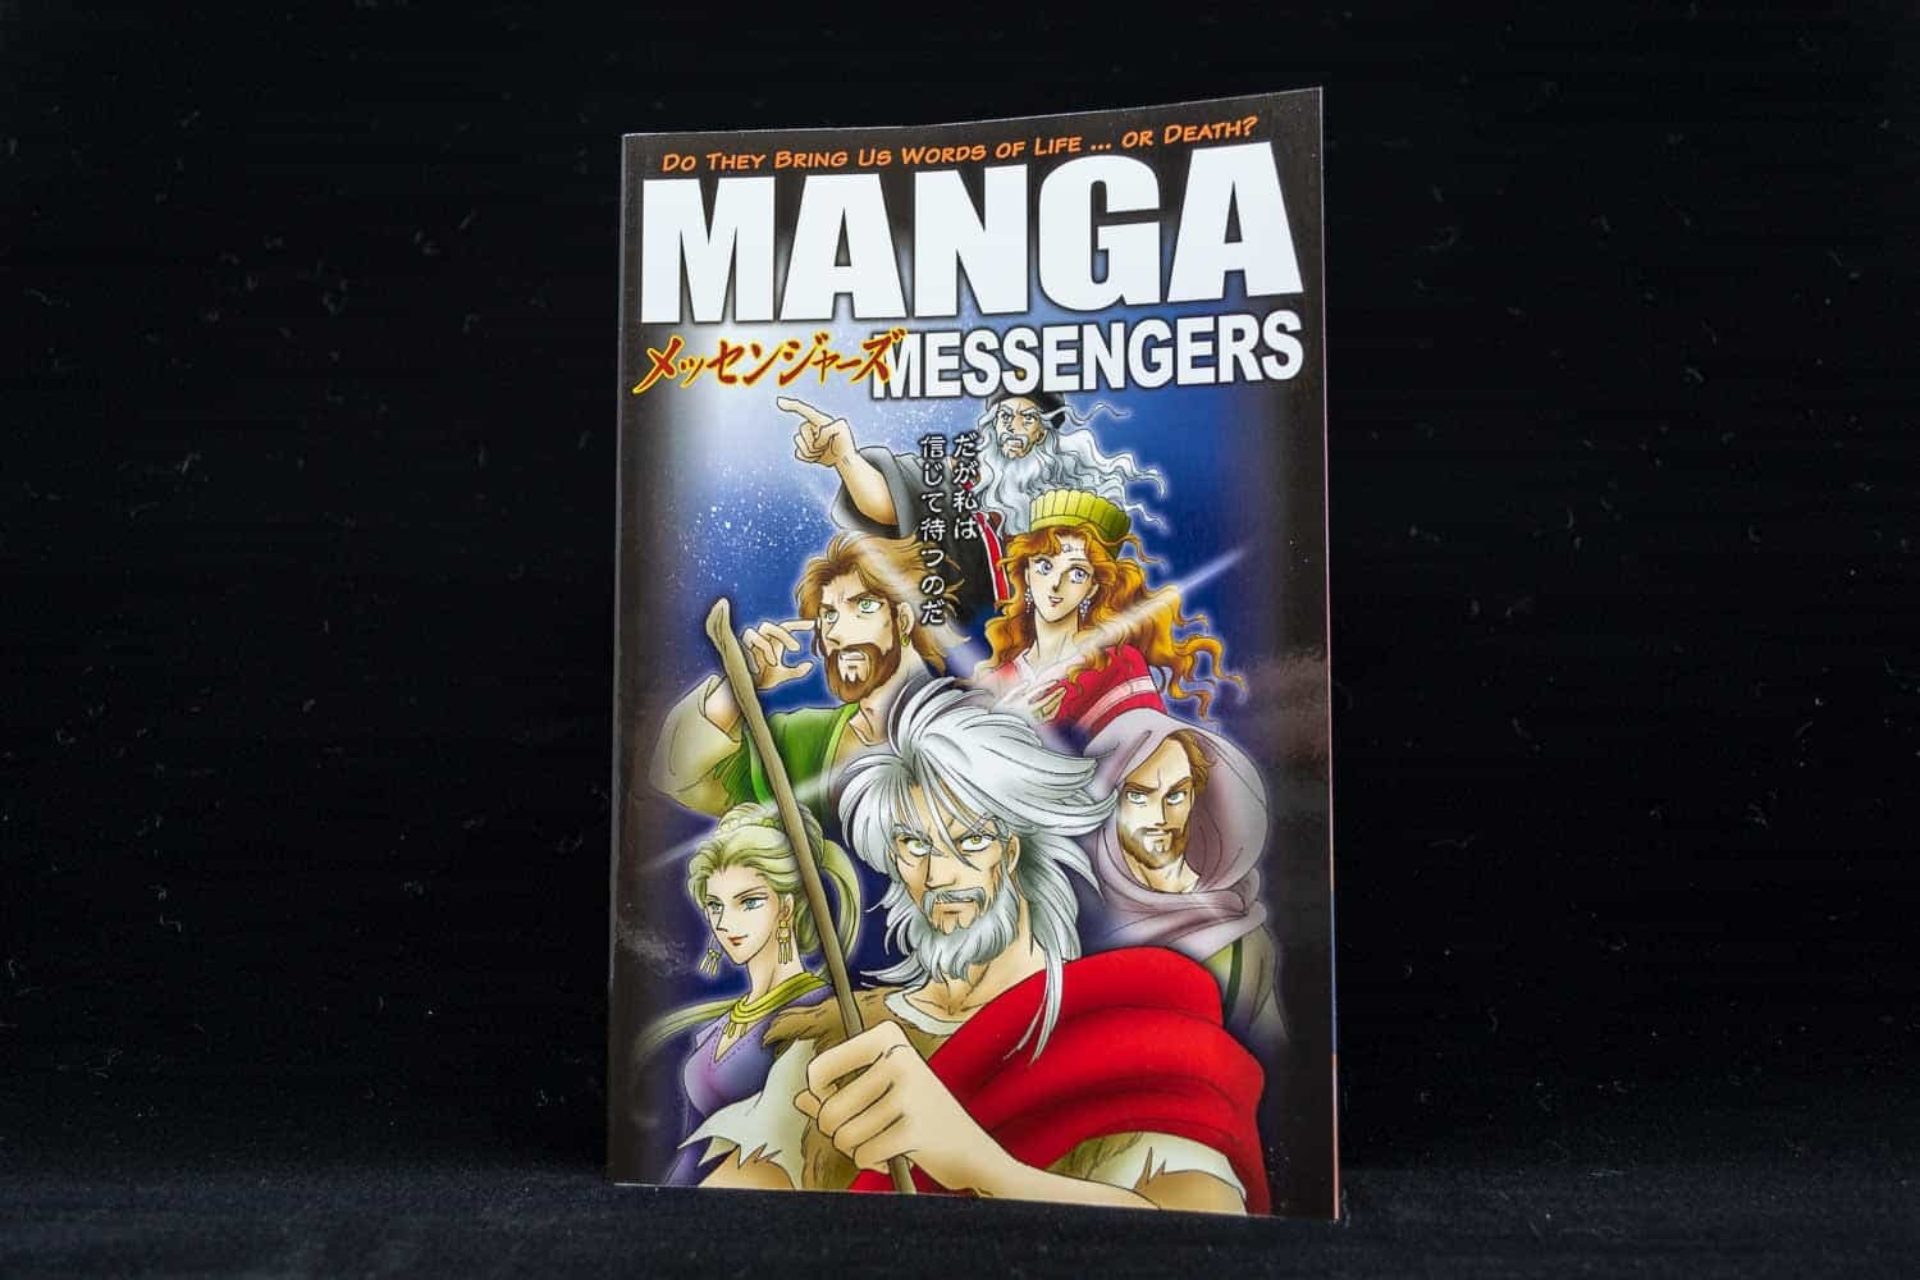 The Manga Messengers book